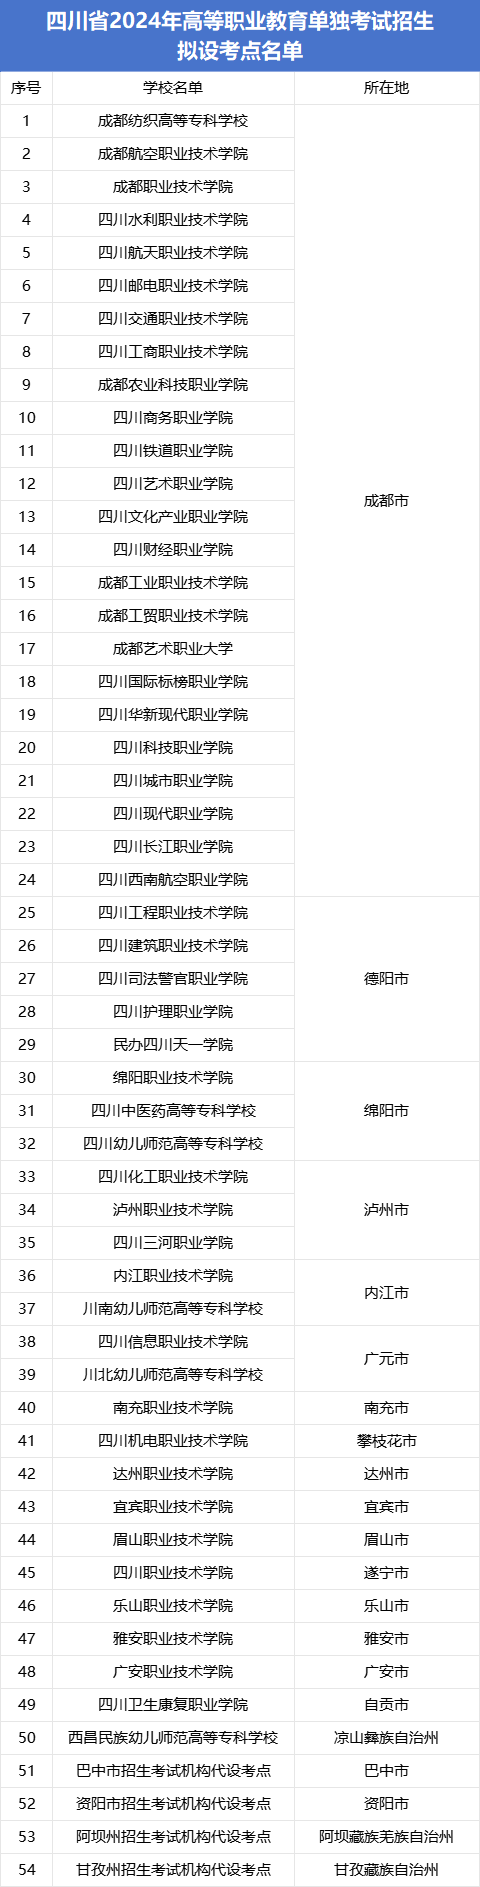 四川省2024年高等职业教育单独考试招生 拟设考点名单